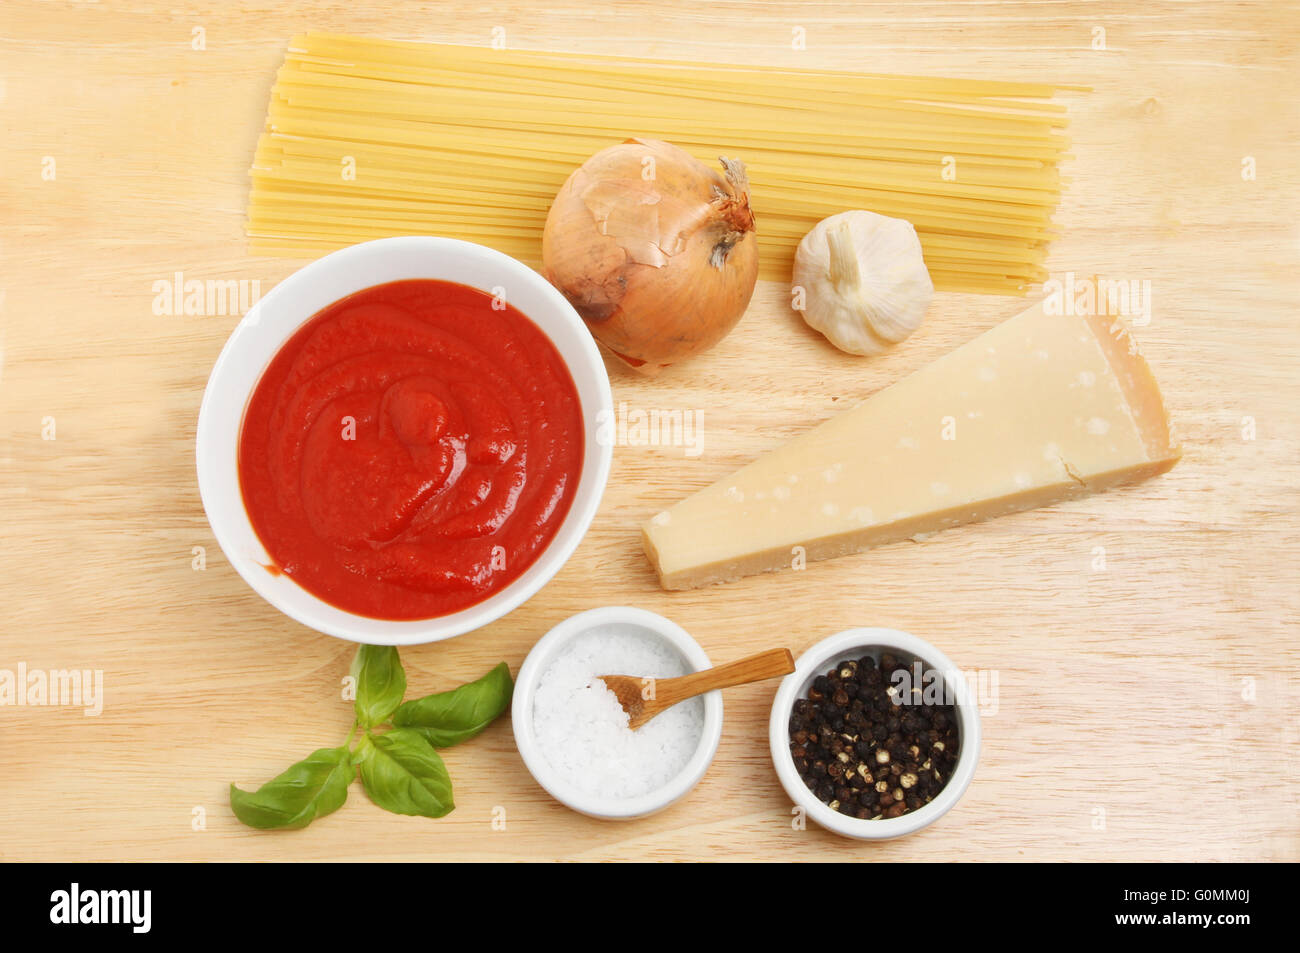 Ingrédients pour une recette de spaghetti sur une planche à découper en bois Banque D'Images